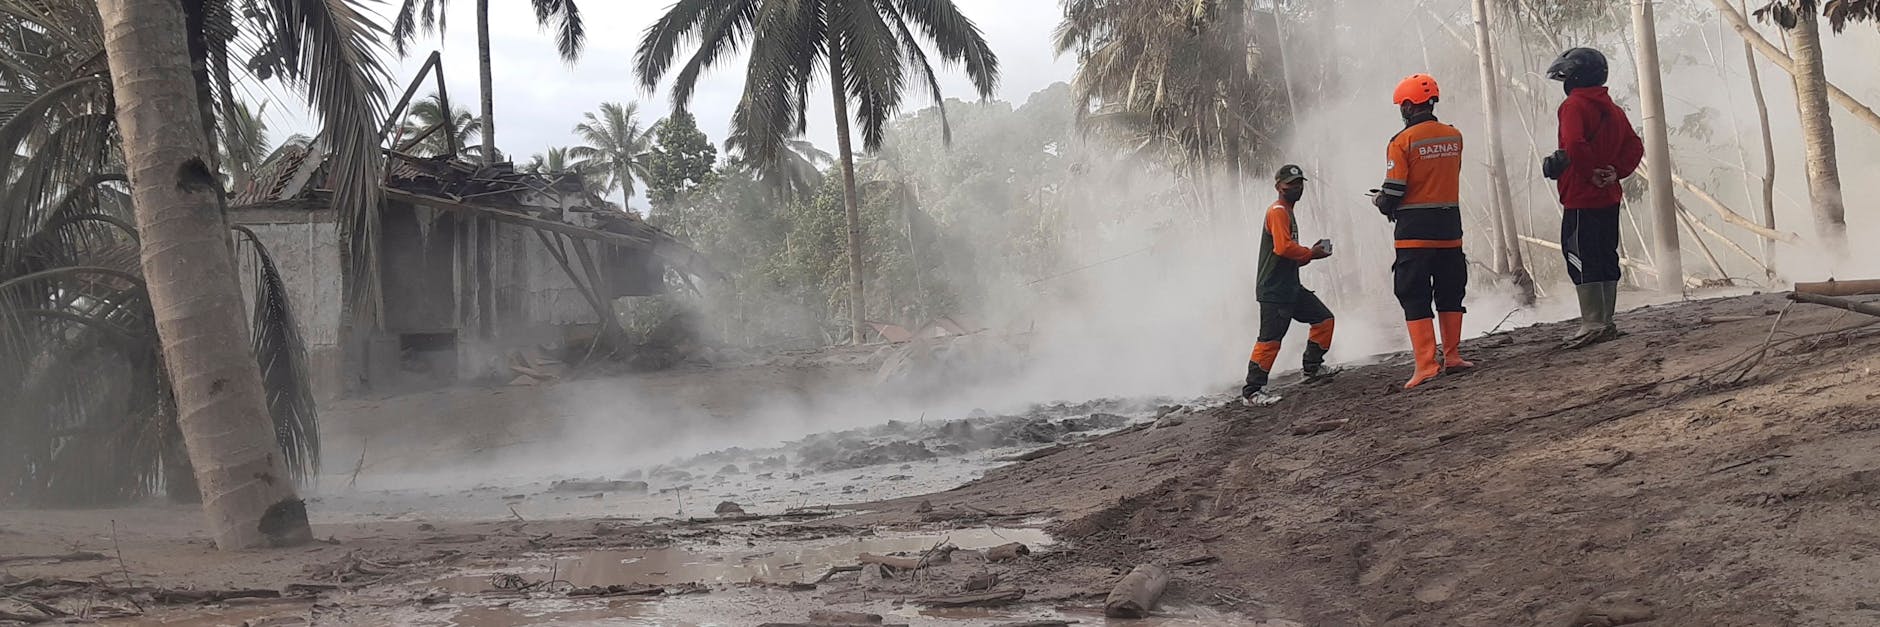 Indonesische Rettungskräfte suchen nach Opfern in einem vom Ausbruch des Mount Semeru betroffenen Gebiet in Lumajang, Ostjava.